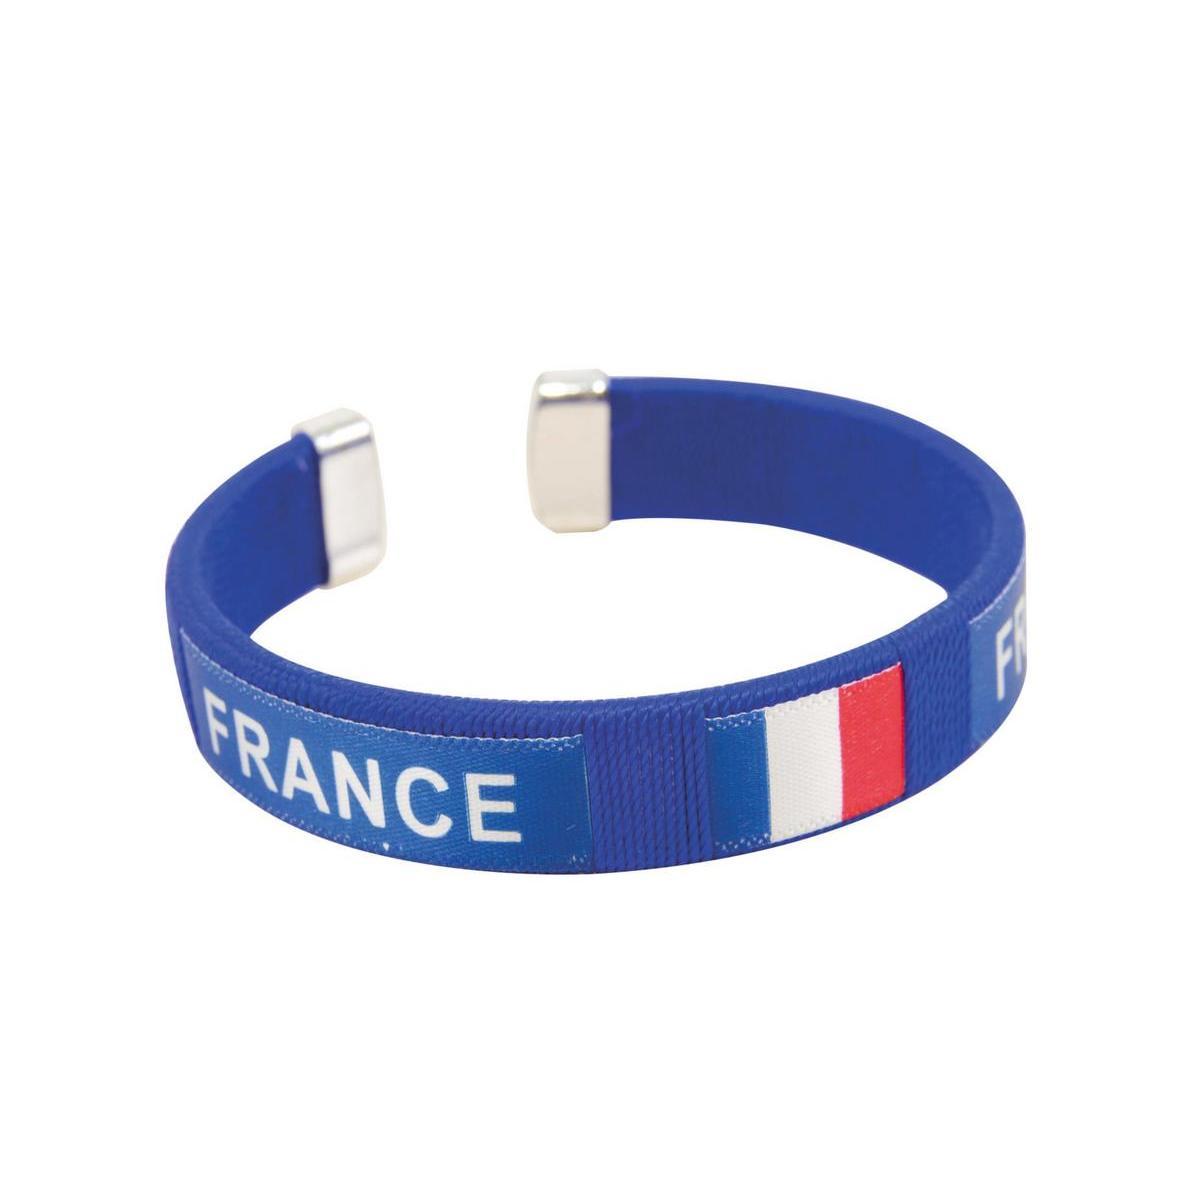 Bracelet rigide équipe de France - Plastique - 8 x 3 cm - Bleu, blanc et rouge